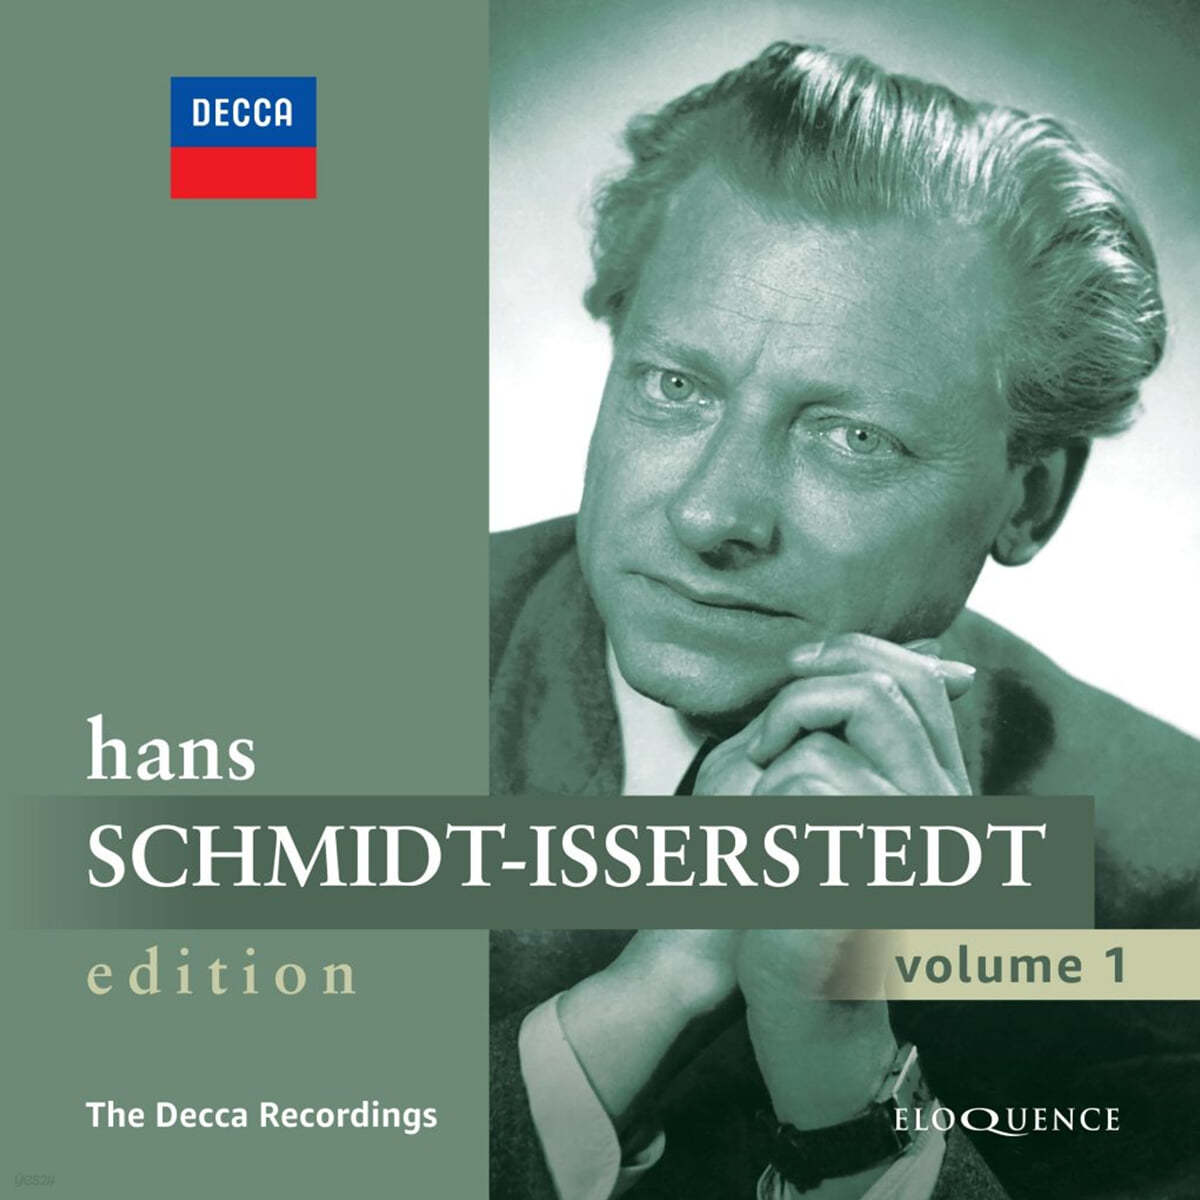 Hans Schmidt-Isserstedt 데카 레코딩 (The Decca Recordings)